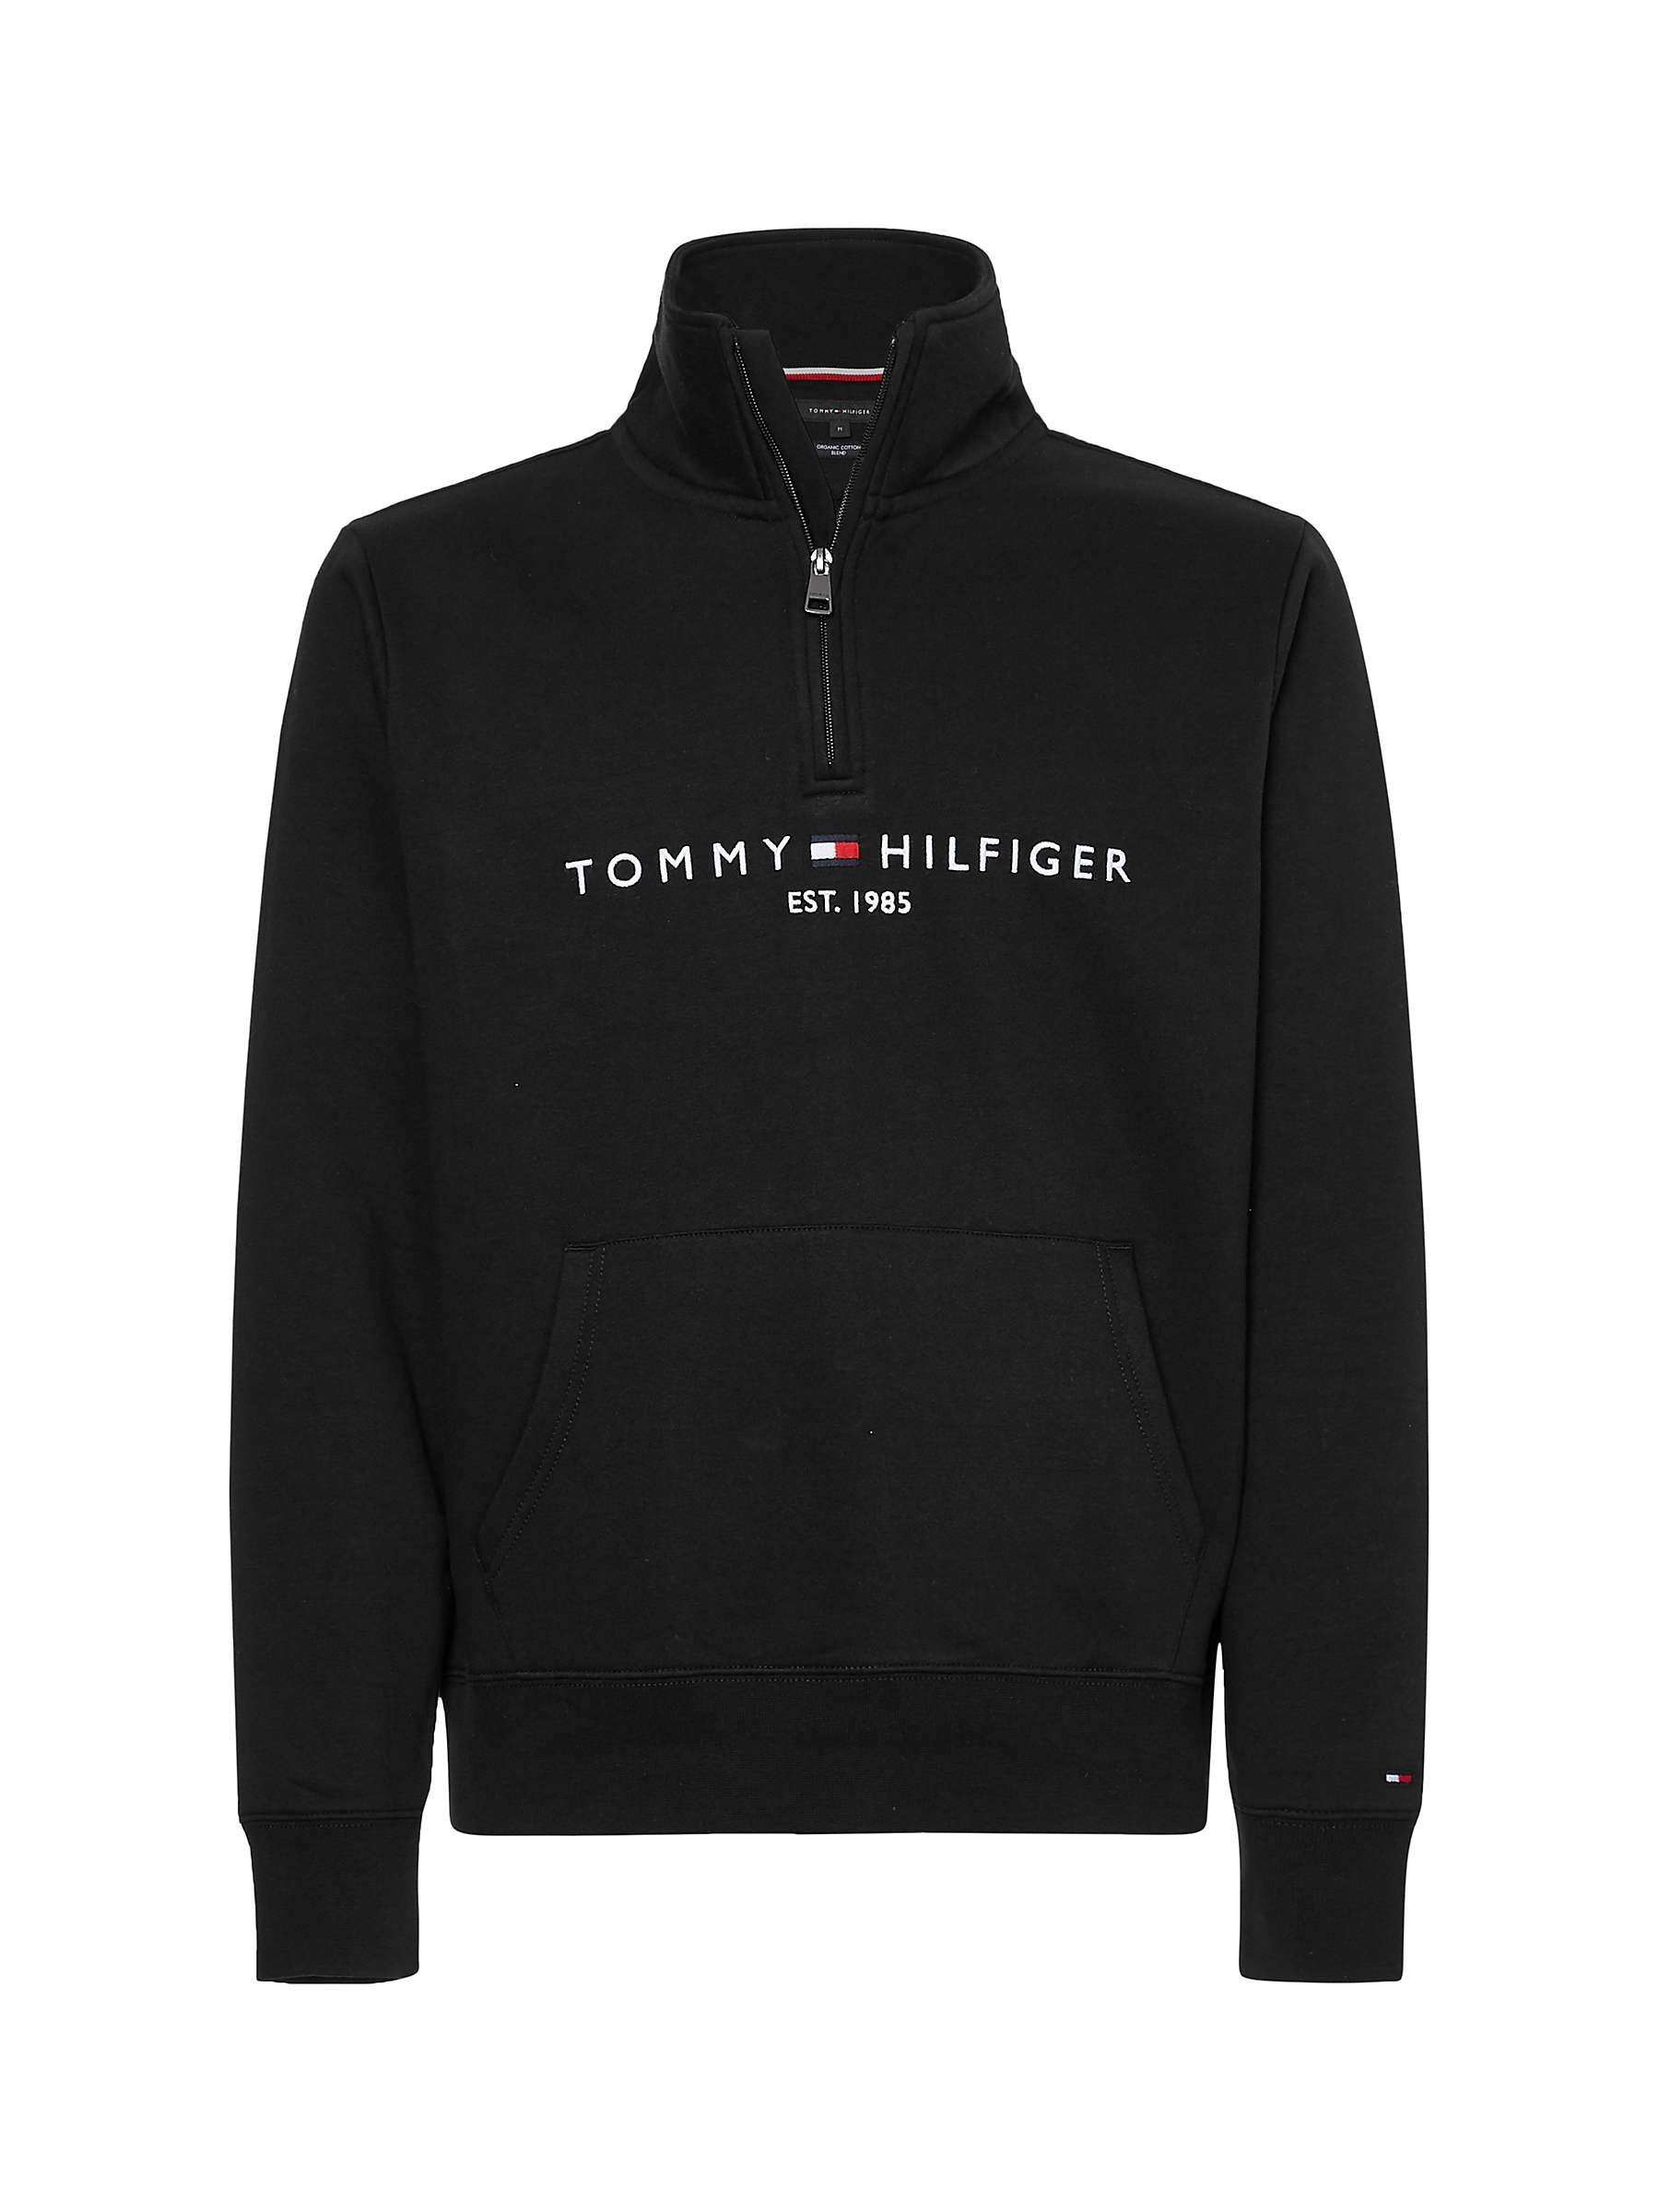 Tommy Hilfiger Mock Neck Sweatshirt, Black at John Lewis & Partners